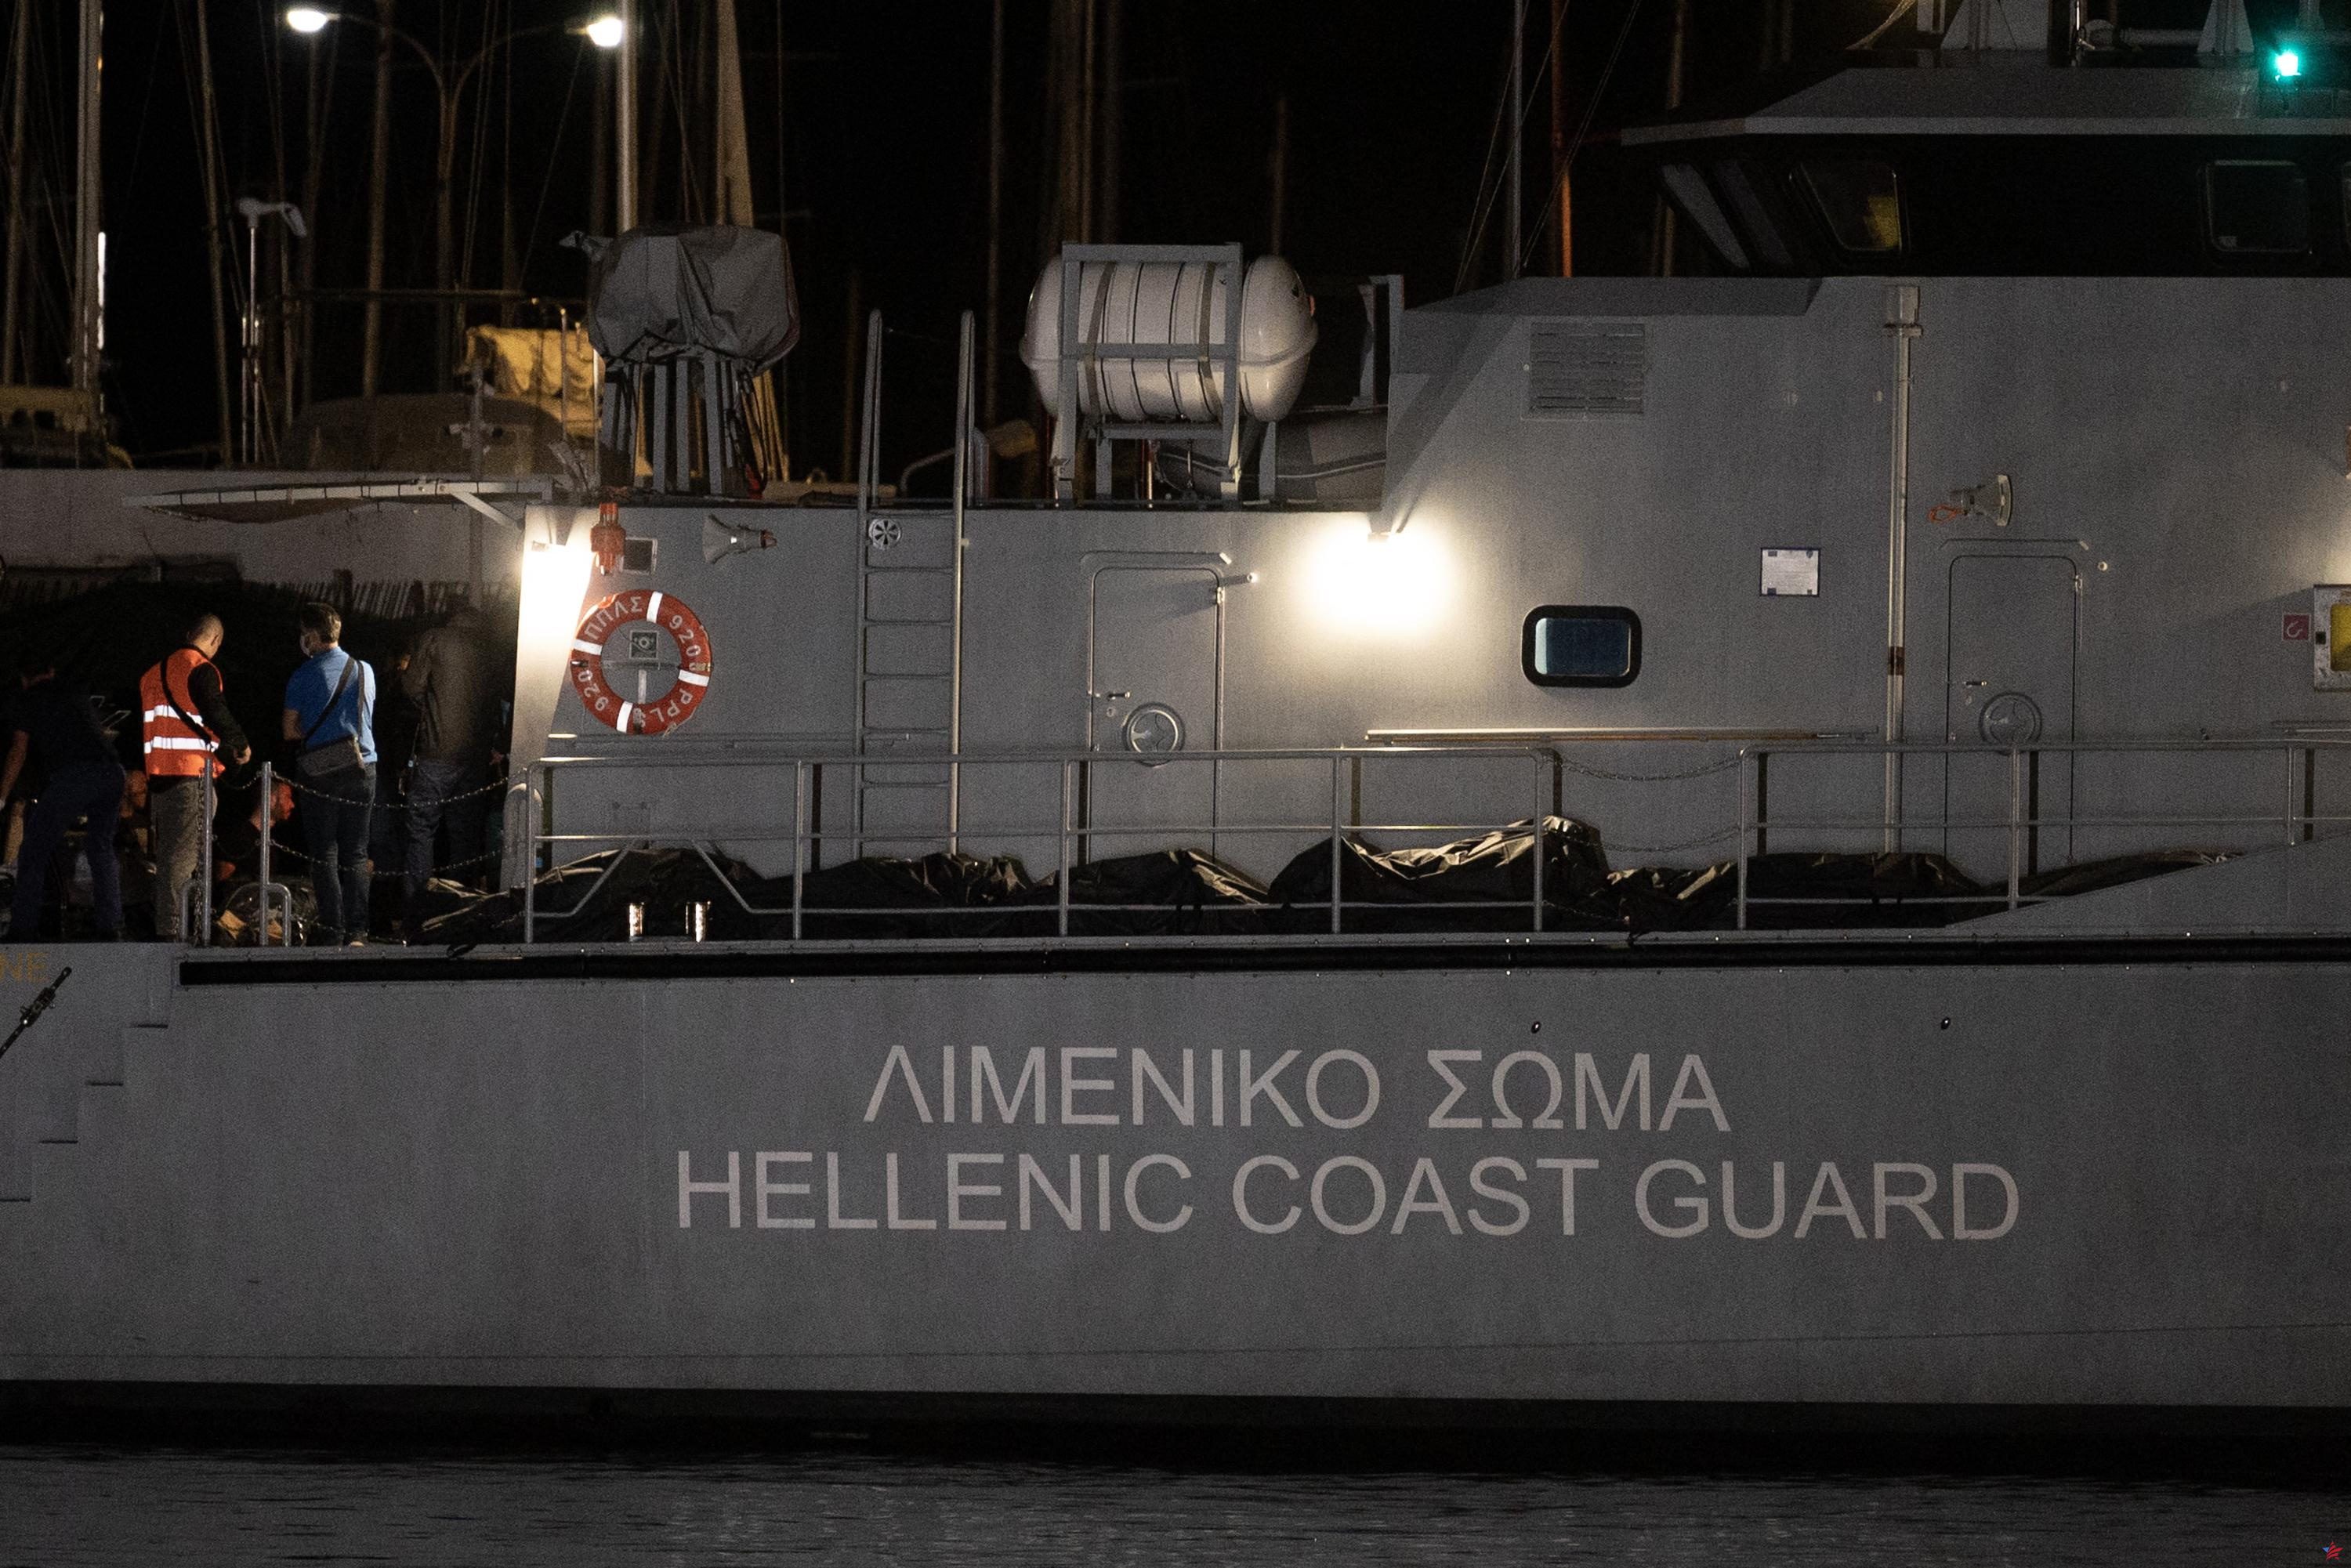 Grecia: 91 inmigrantes desembarcan en el islote de Gavdos, una nueva puerta de entrada a la UE